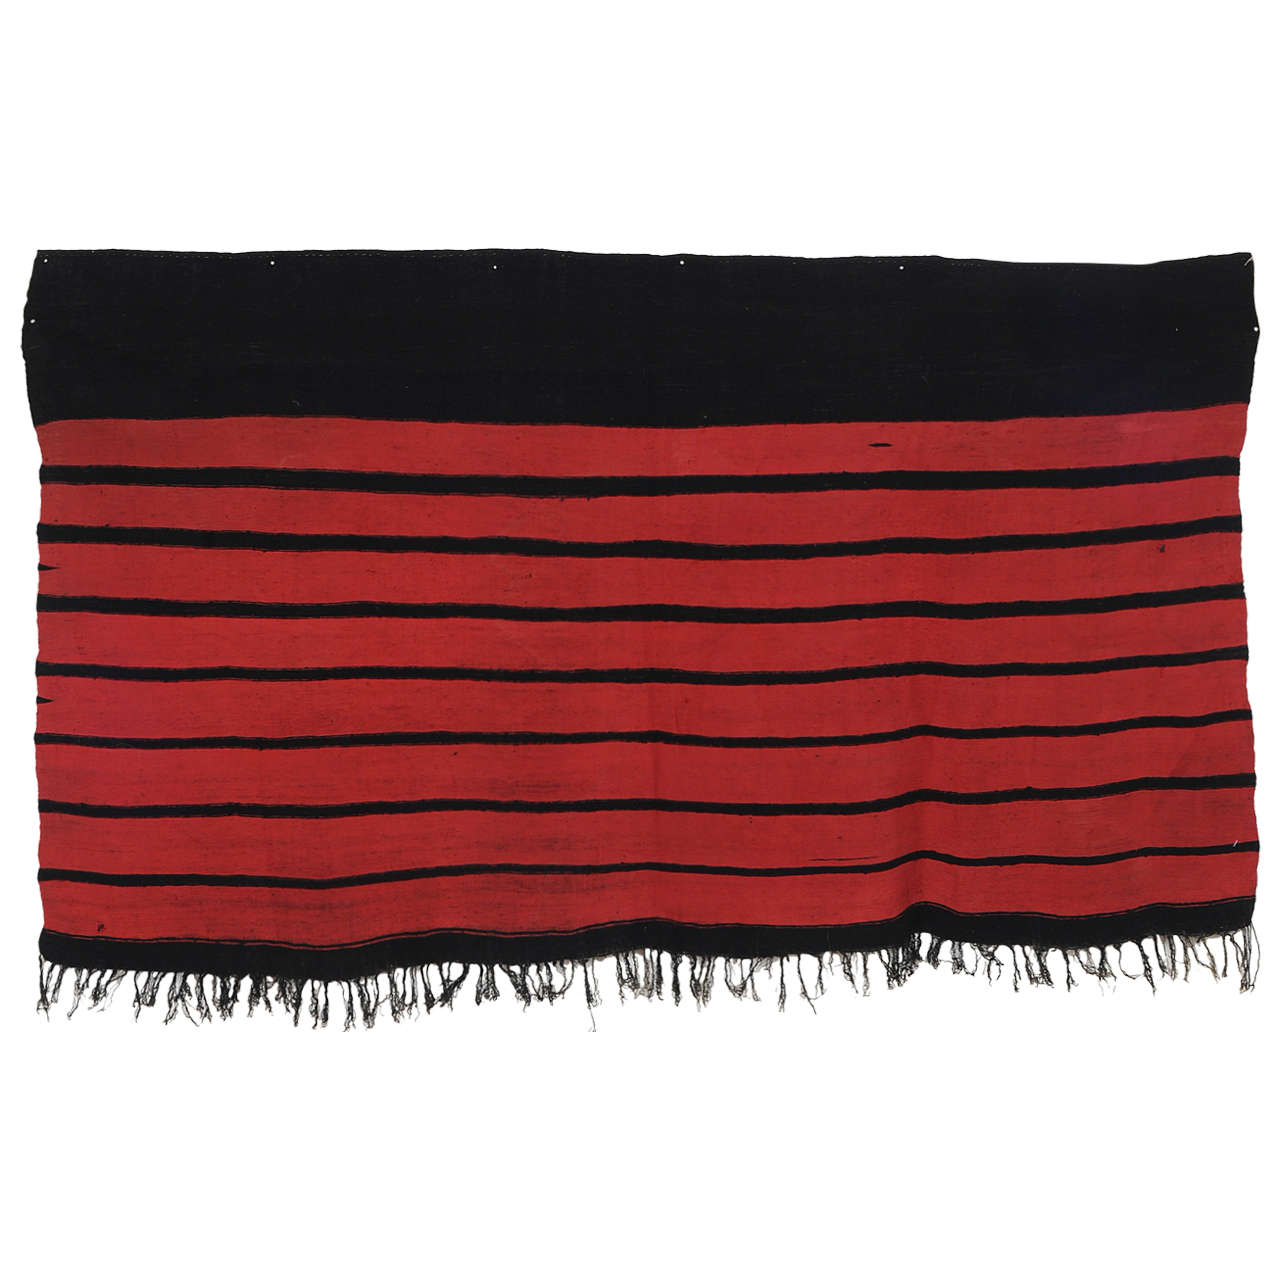 Sehr feiner antiker algerischer Schal aus Seide und Wolle mit Streifen